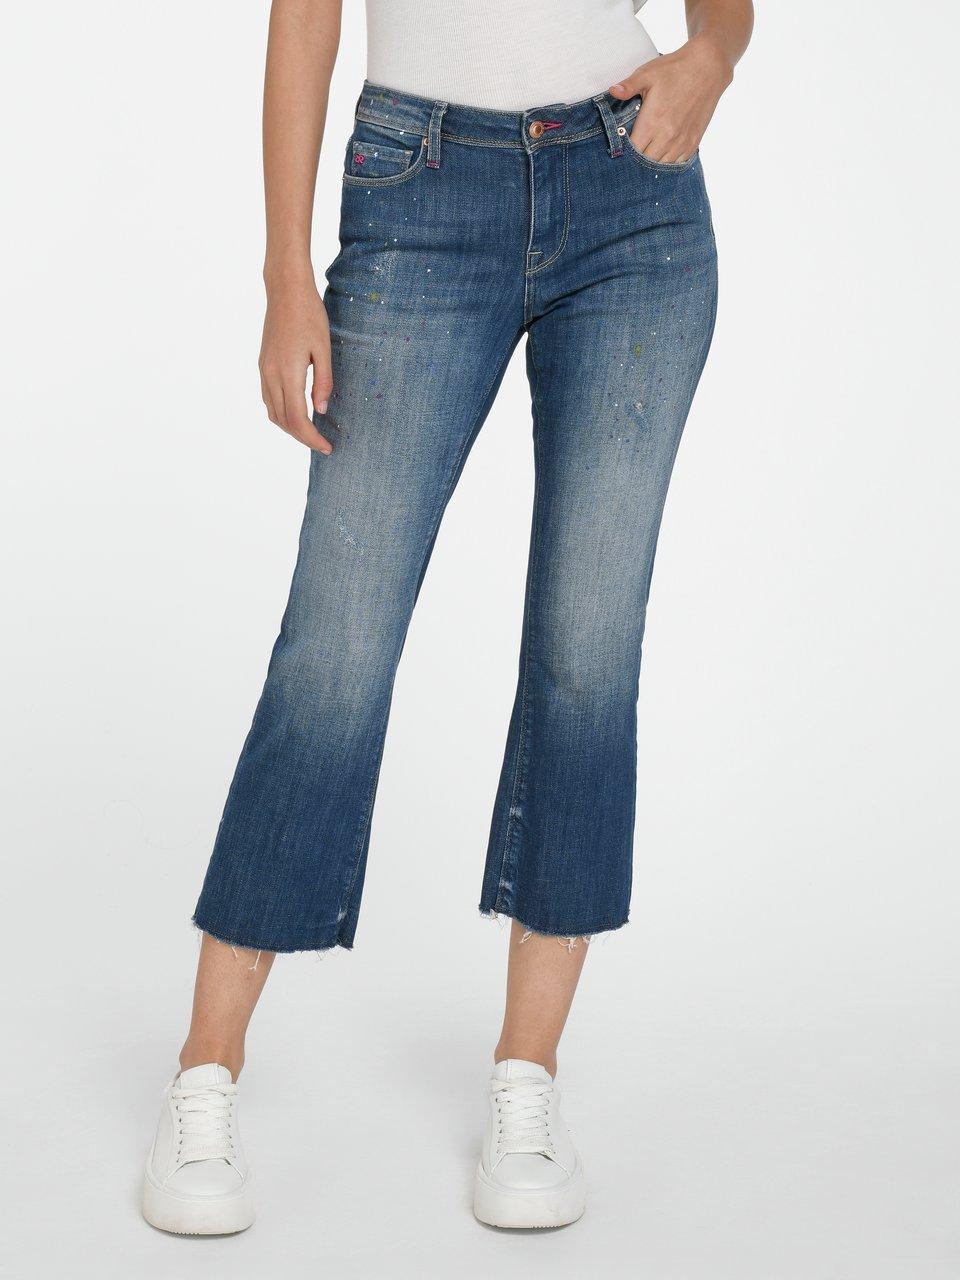 Raffaello Rossi - 7/8-Jeans Modell Vic Dots